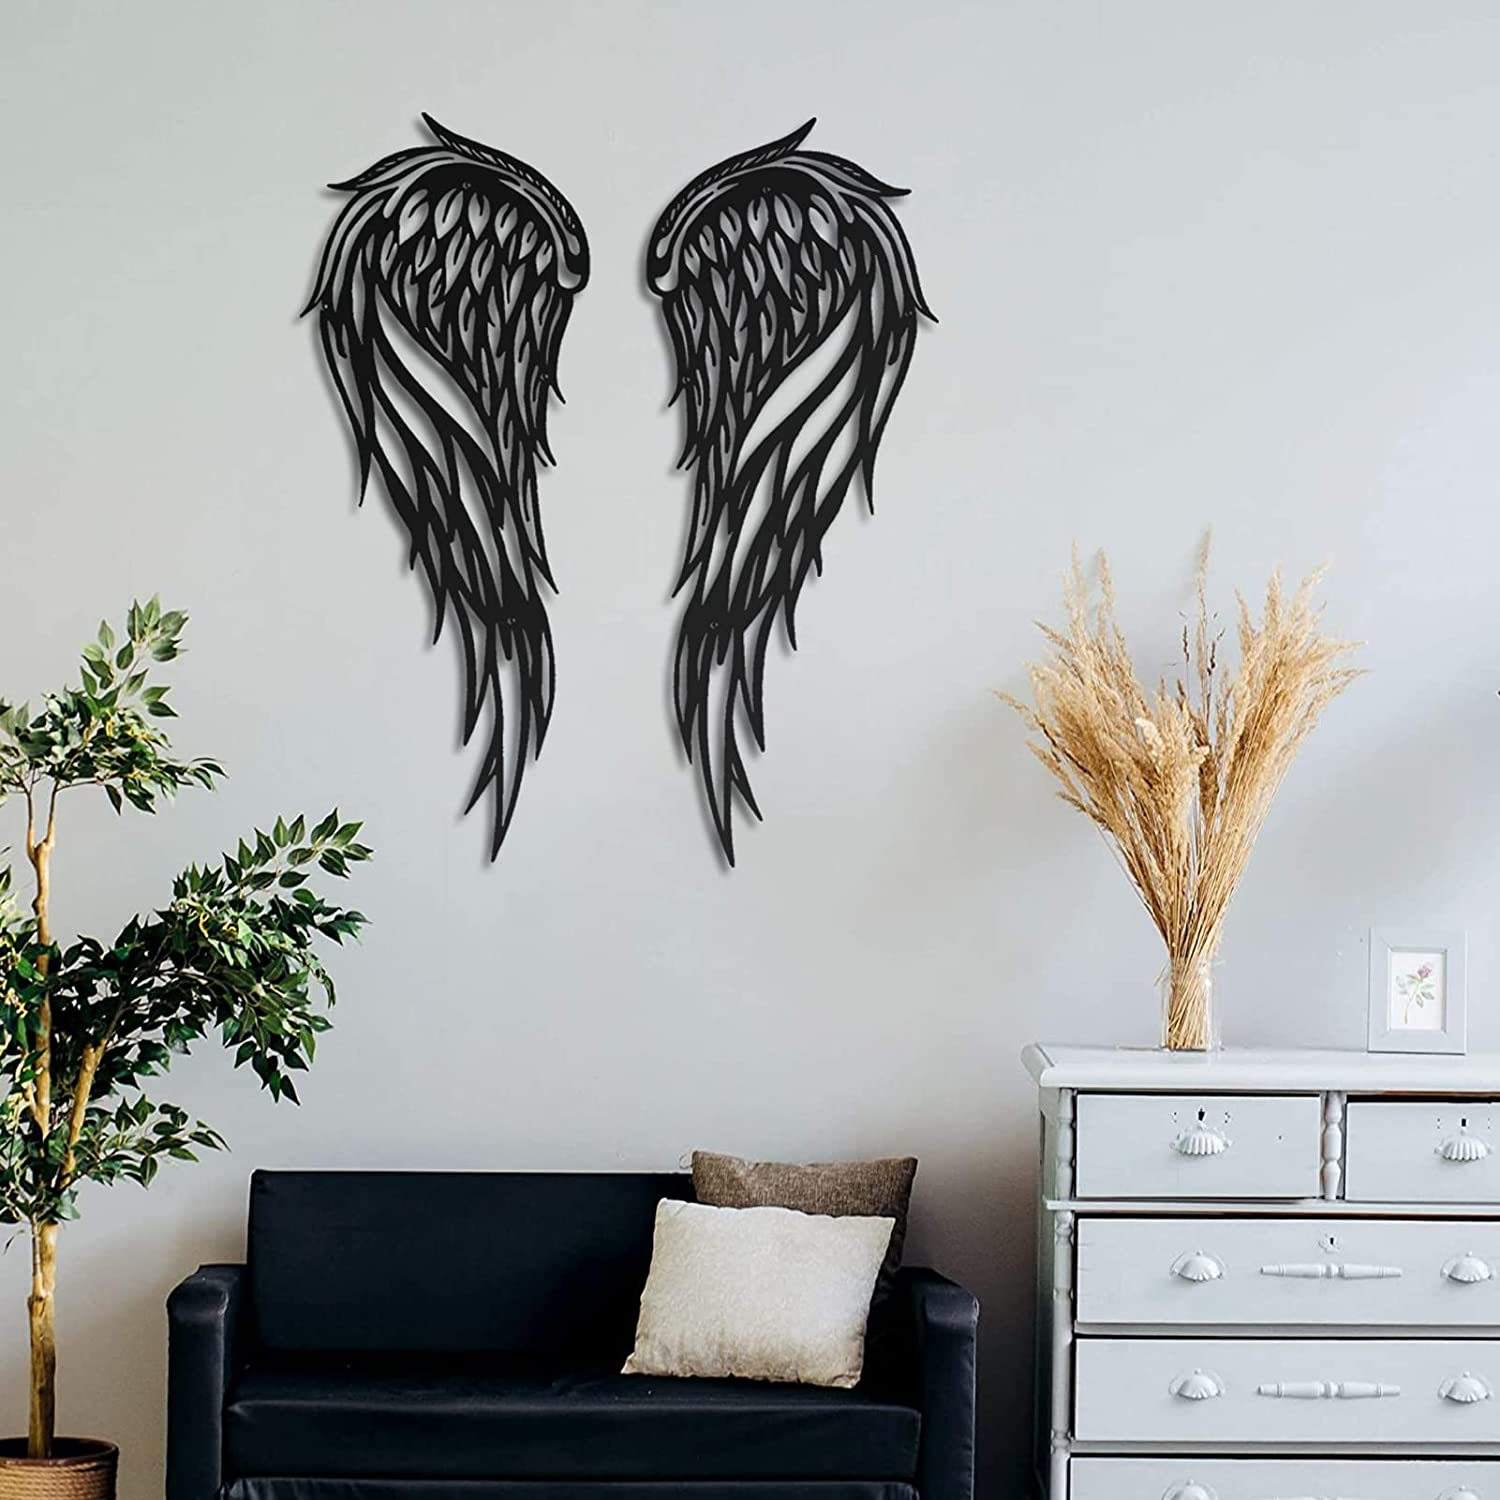 Indoor Outdoor Large Metal Angel Wings Wall Decor For Home Bedroom Living Room Garden Office